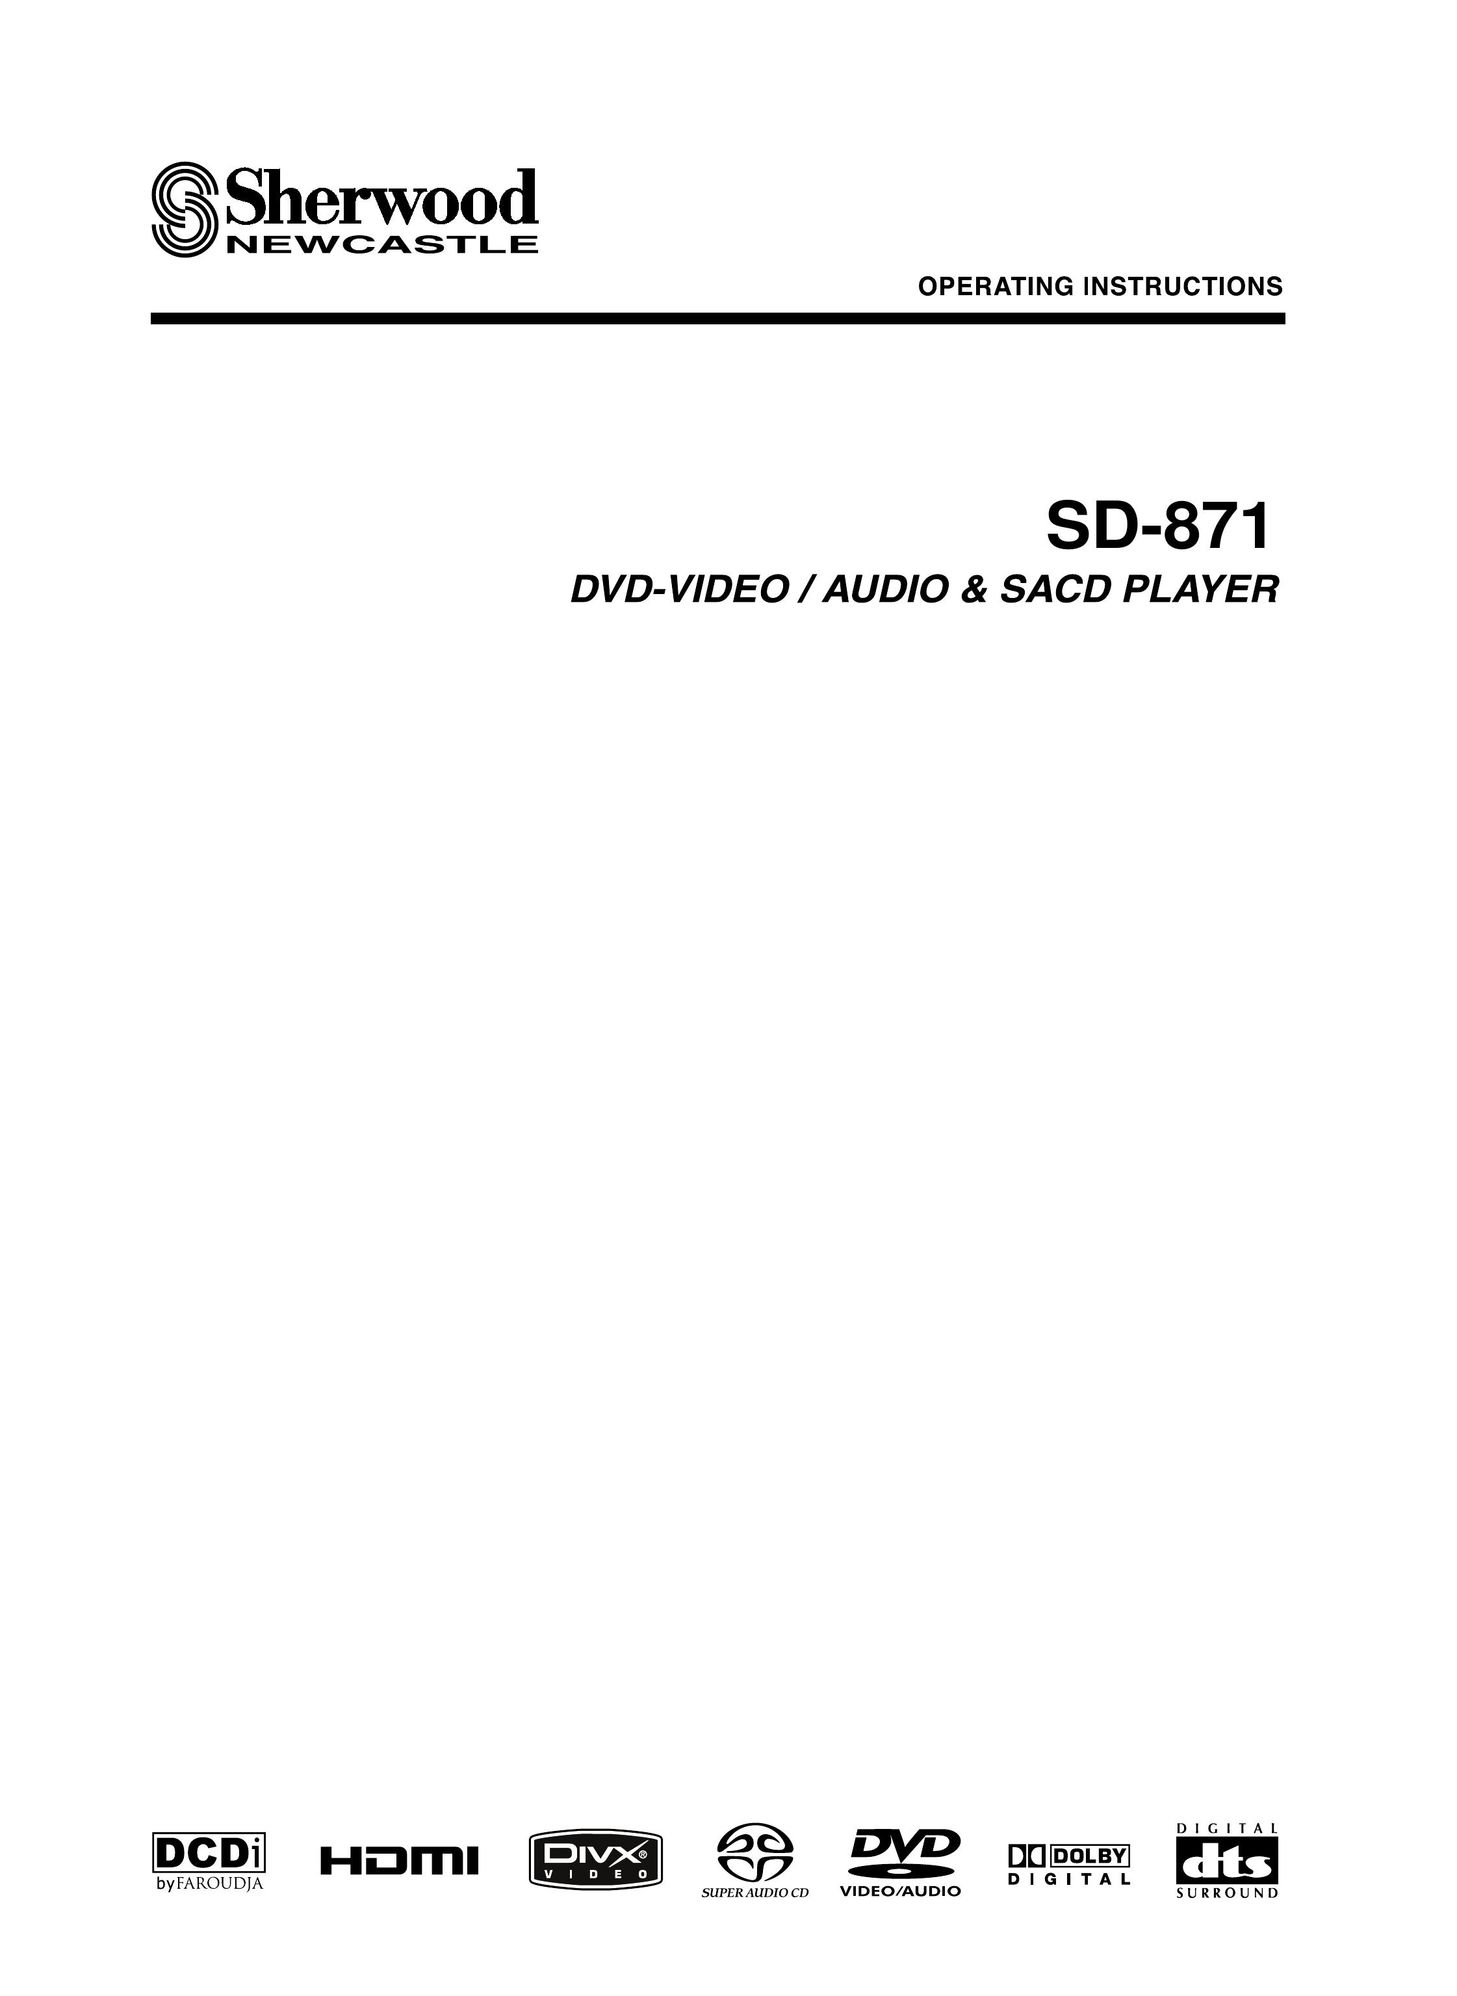 Sherwood SD-871 DVD Player User Manual